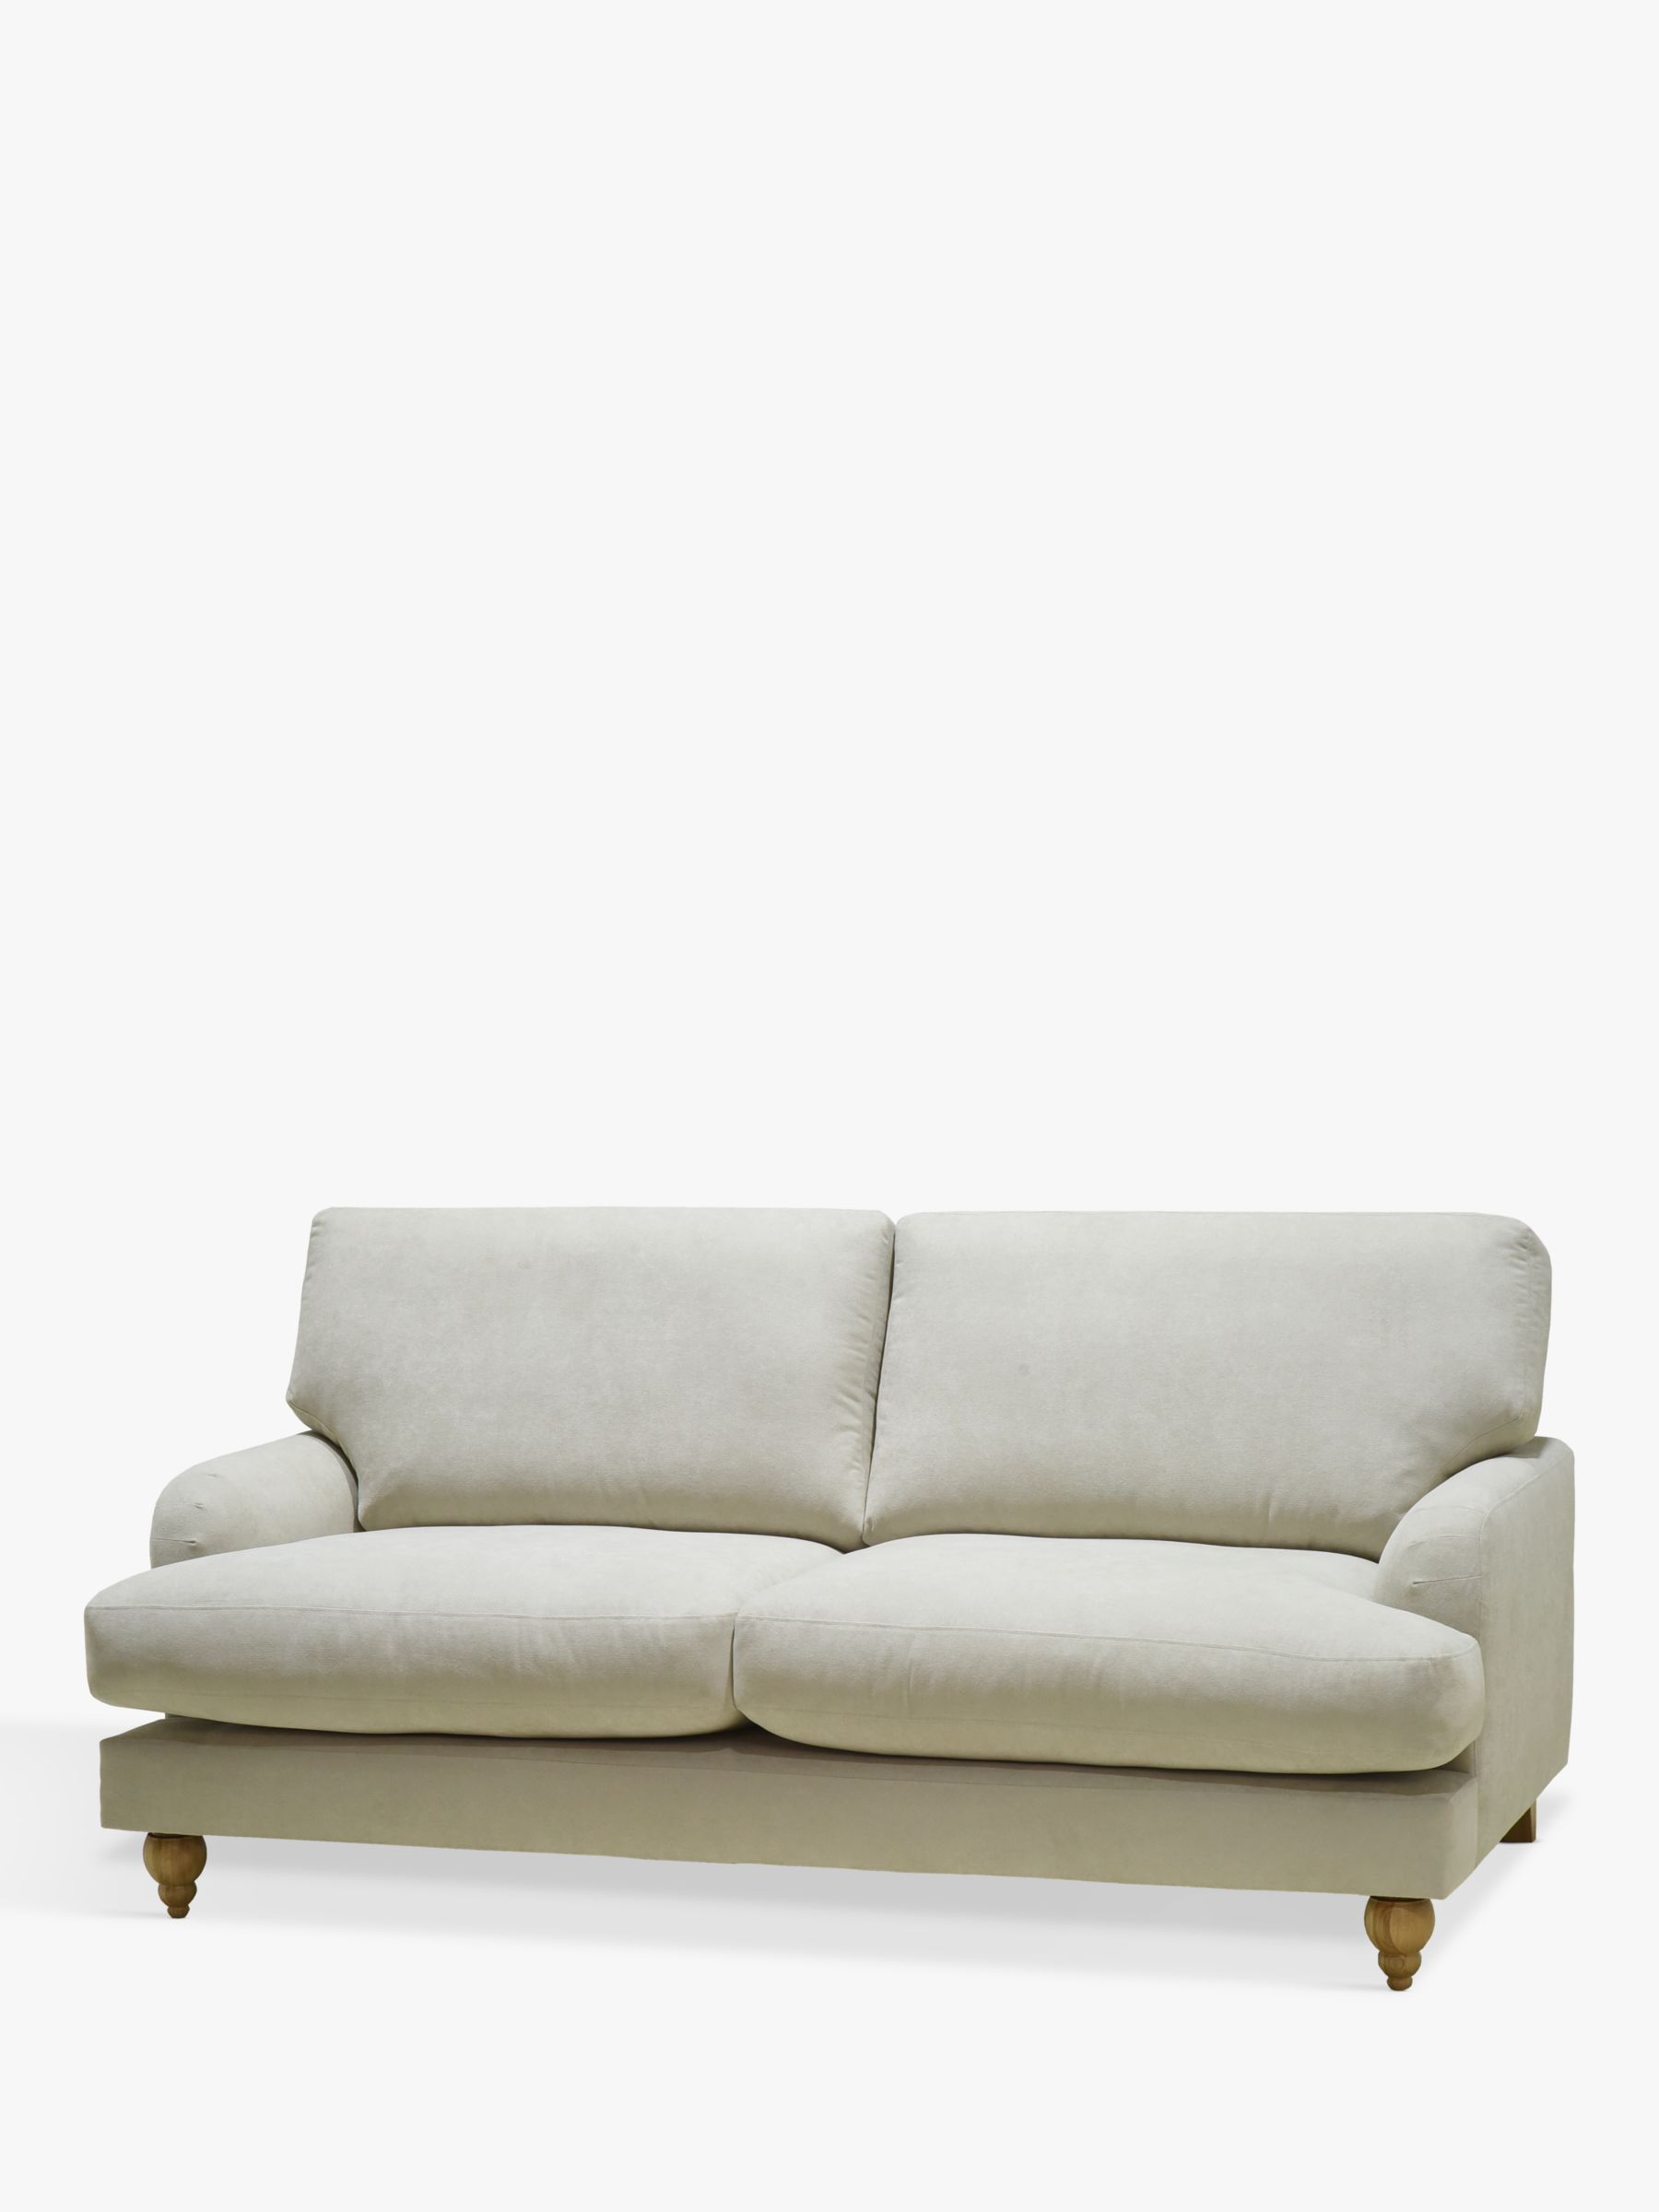 Clover Range, John Lewis Clover Large 3 Seater Sofa, Light Leg, Fine Chenille Natural